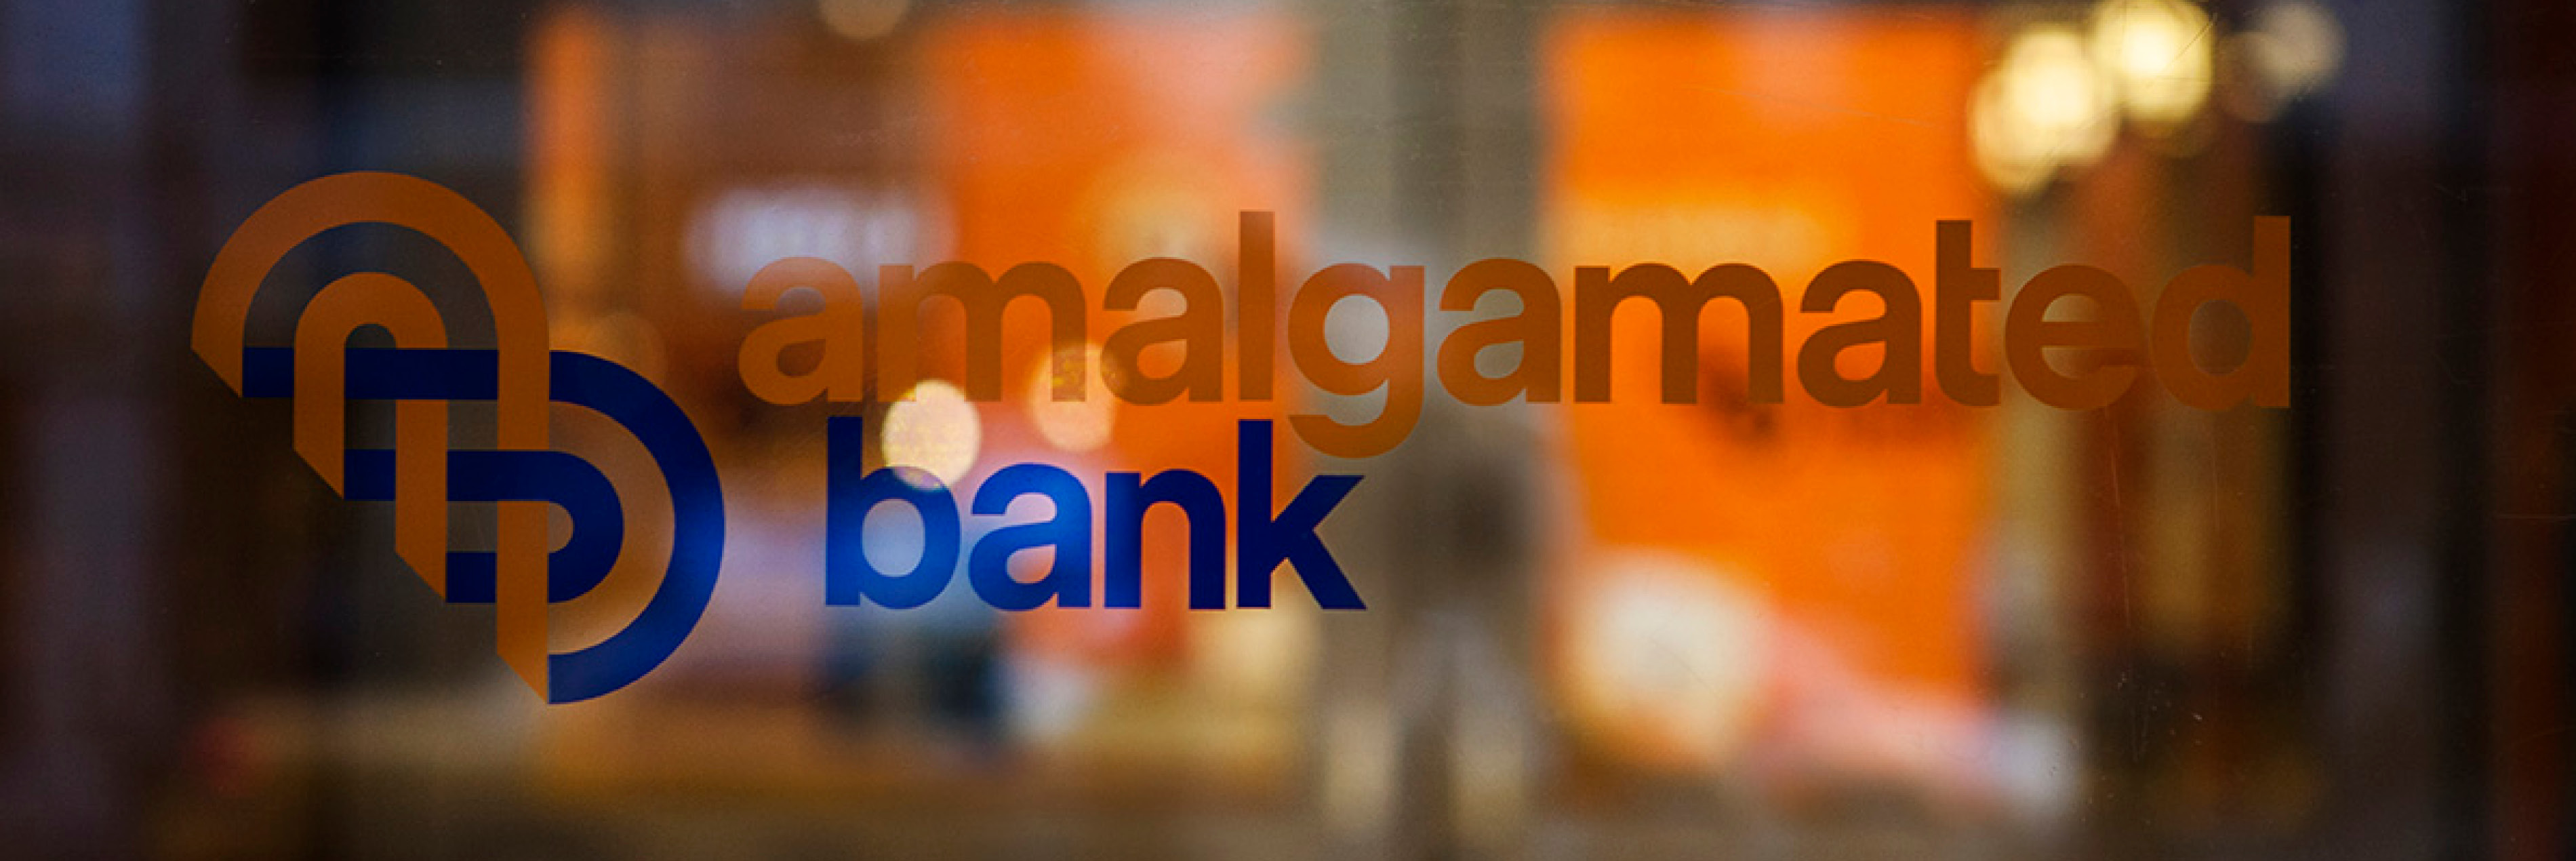 Amalgamated Bank logo on glass